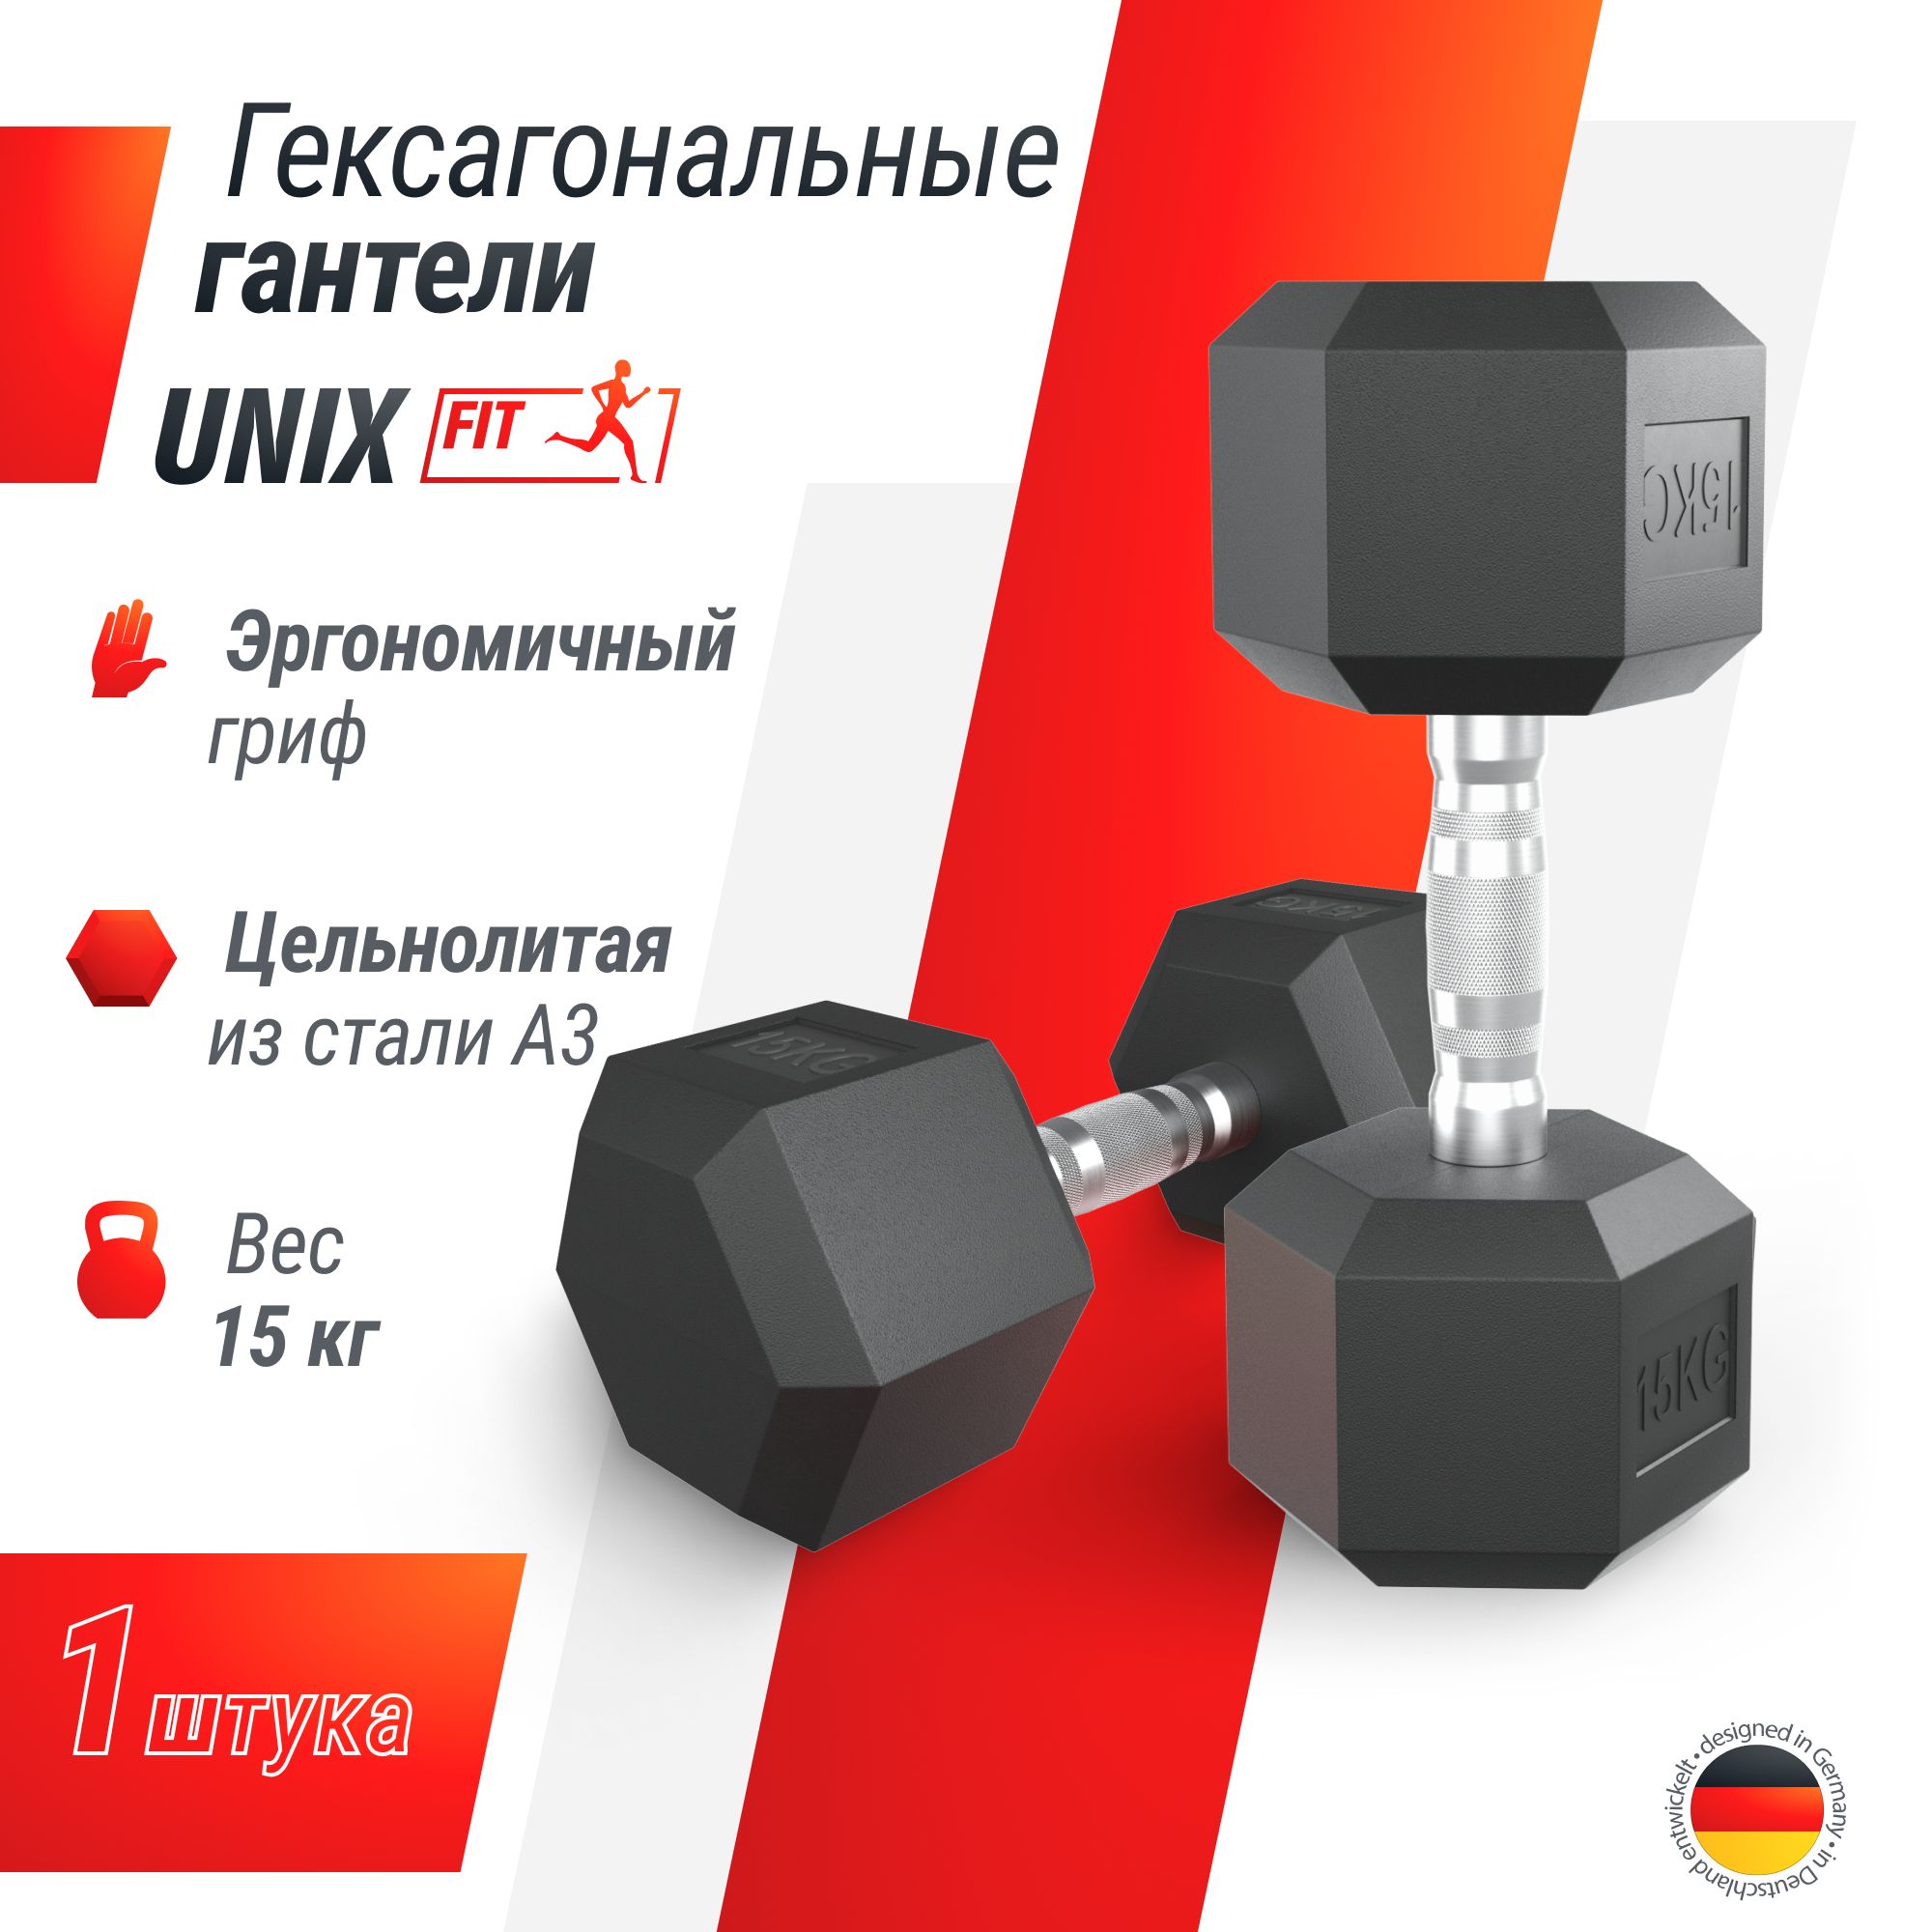 Гантель гексагональная UNIX Fit обрезиненная 15 кг, прорезиненная спортивная гантель